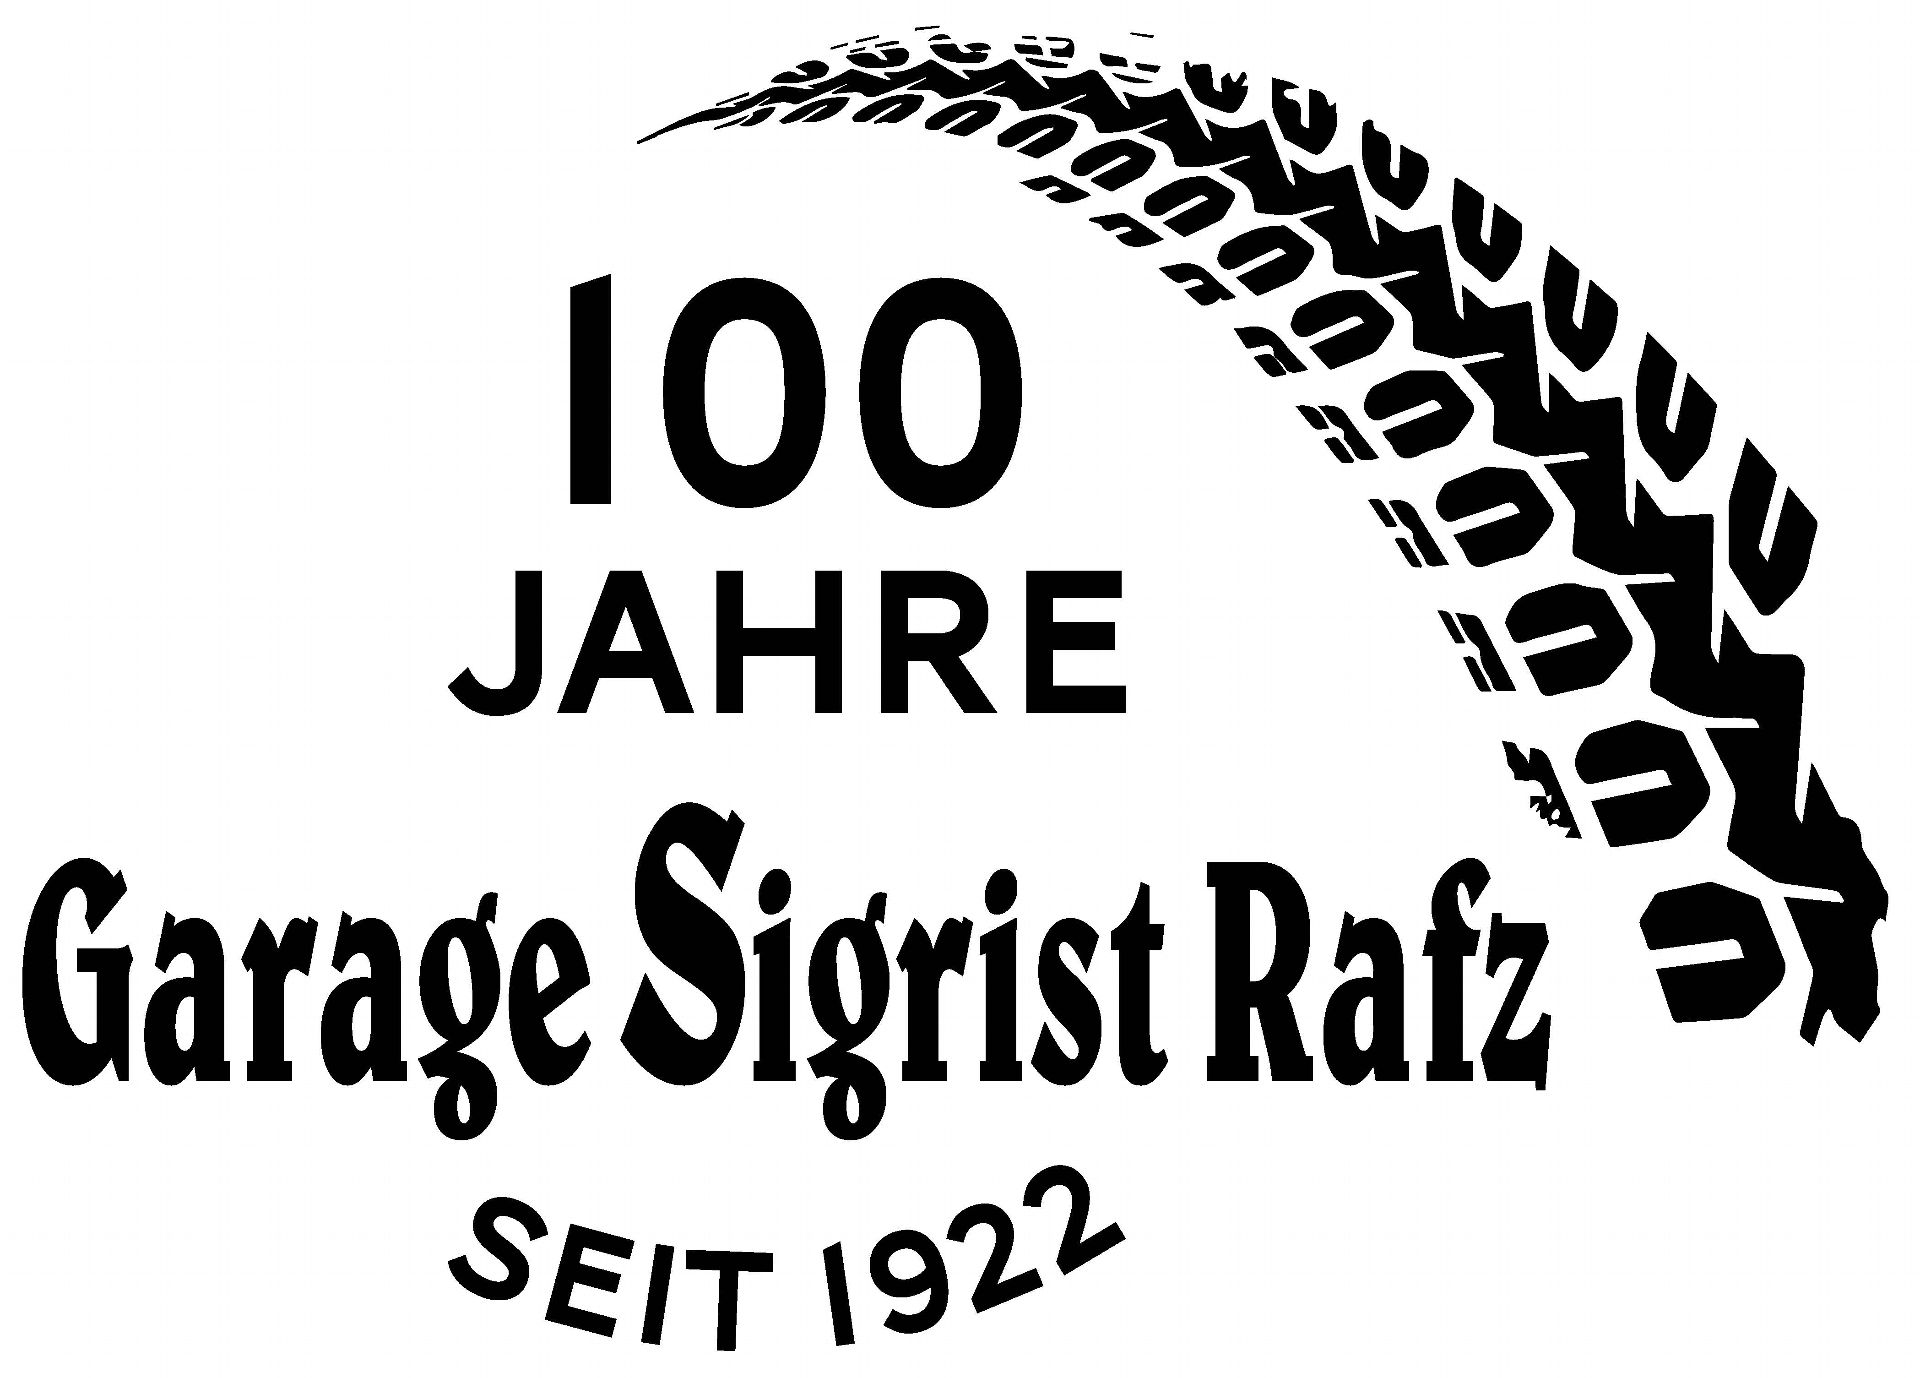 Garage Sigrist Rafz - seit 1922